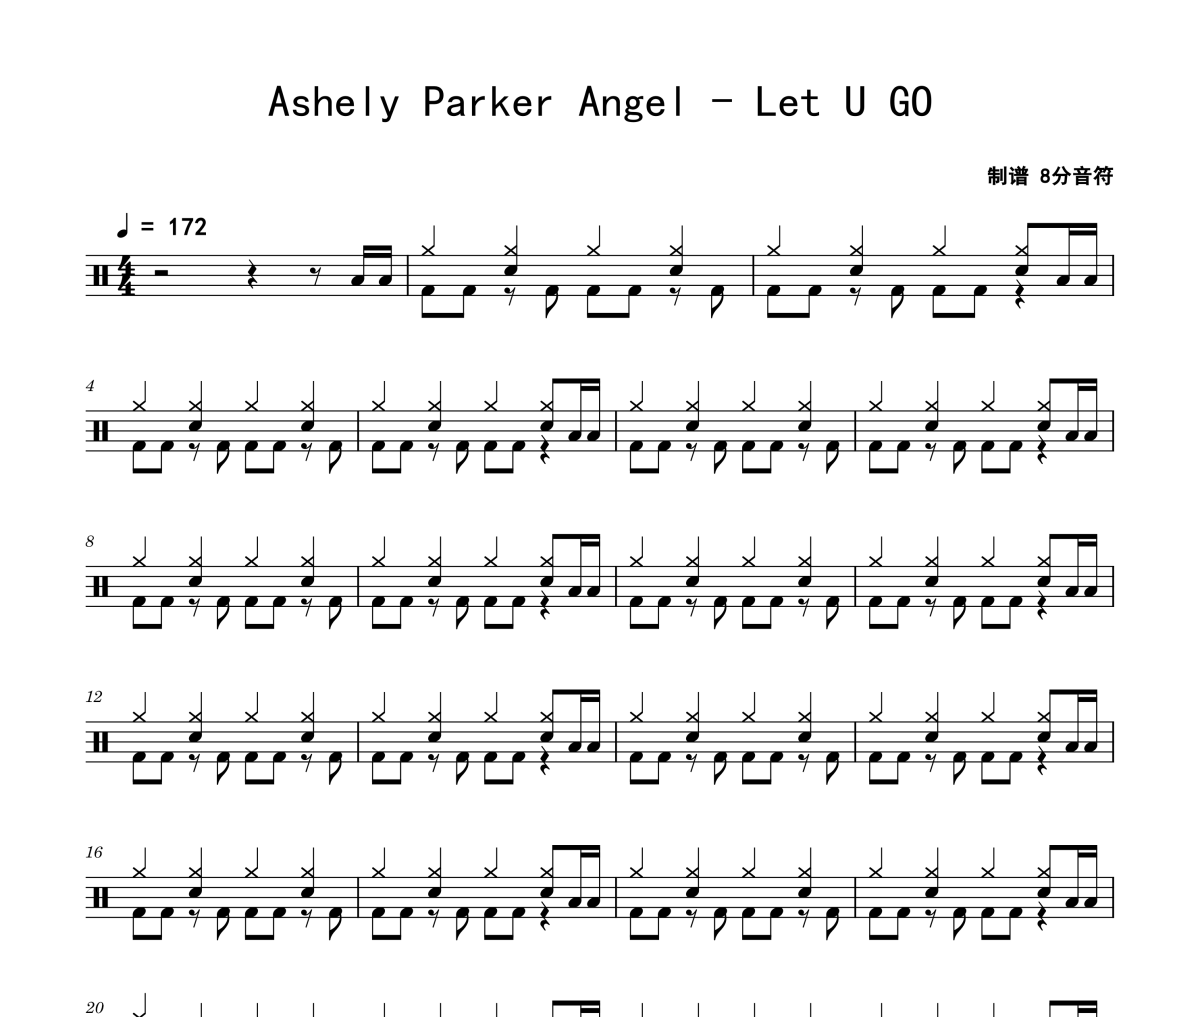 Let U GO鼓谱 Ashely Parker Angel《Let U GO》架子鼓|爵士鼓|鼓谱